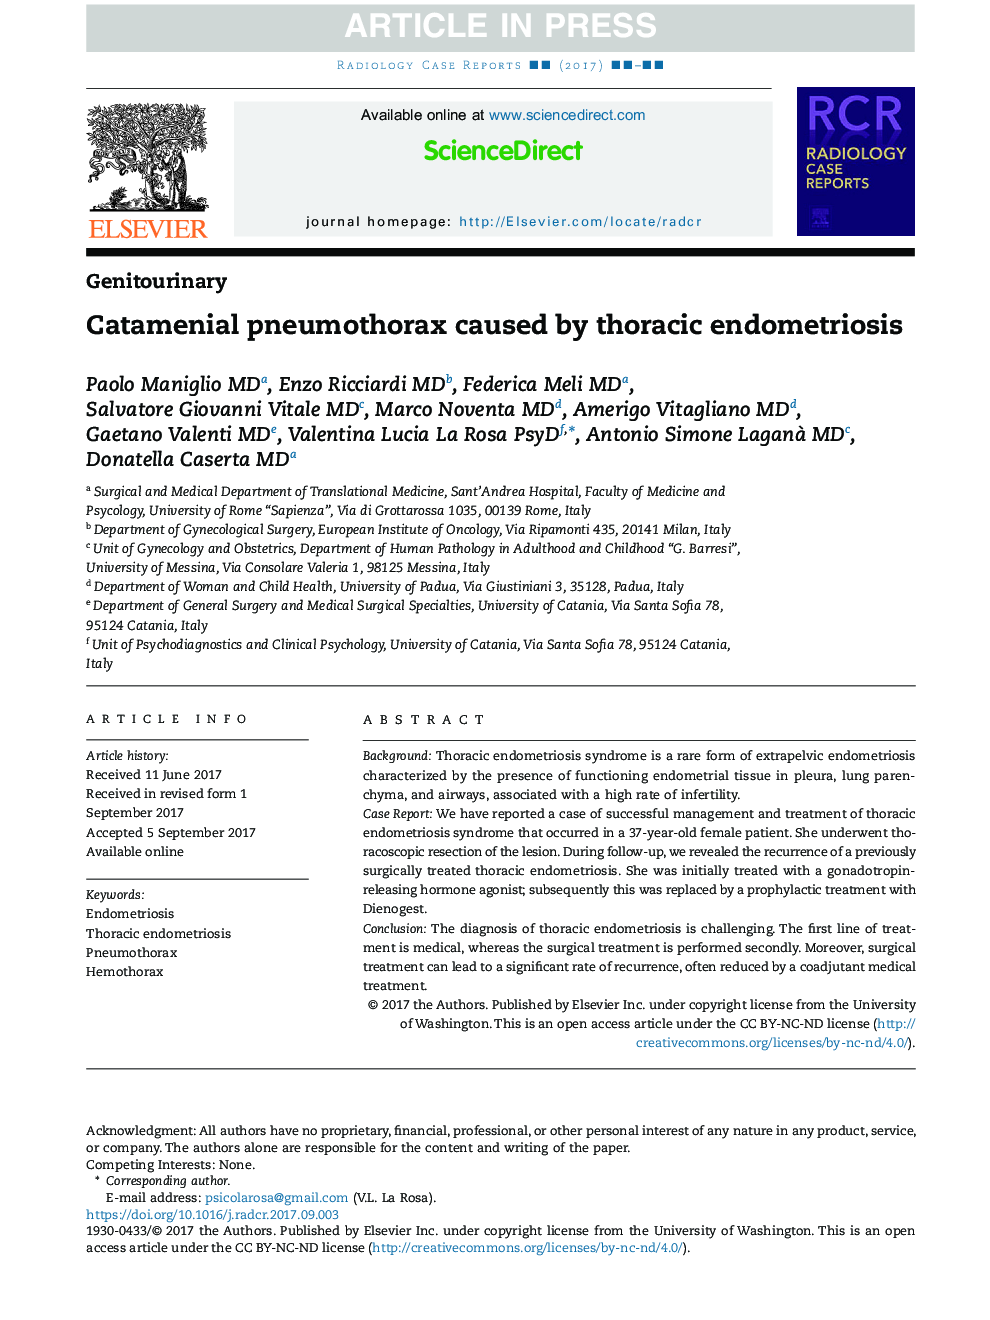 Catamenial pneumothorax caused by thoracic endometriosis